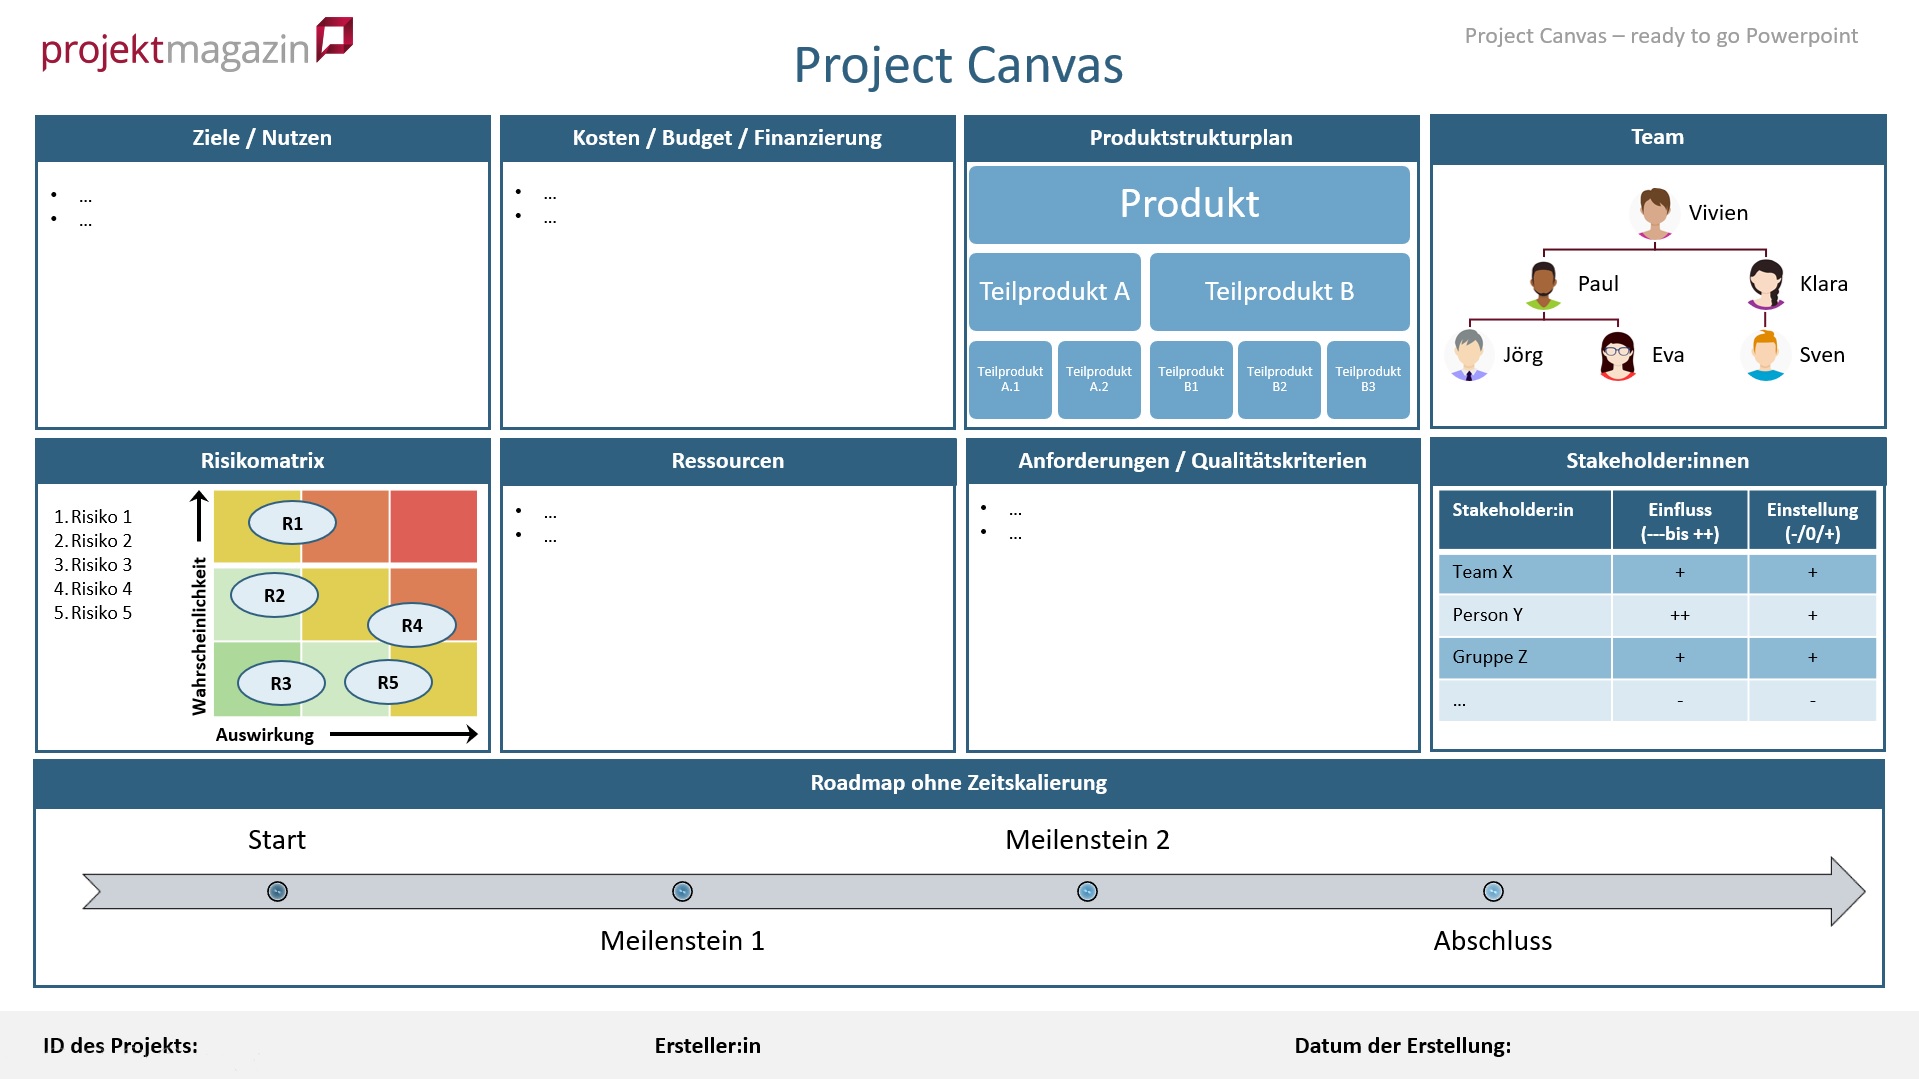 Project Canvas mit vorbereiteten Visualisierungen in Microsoft PowerPoint